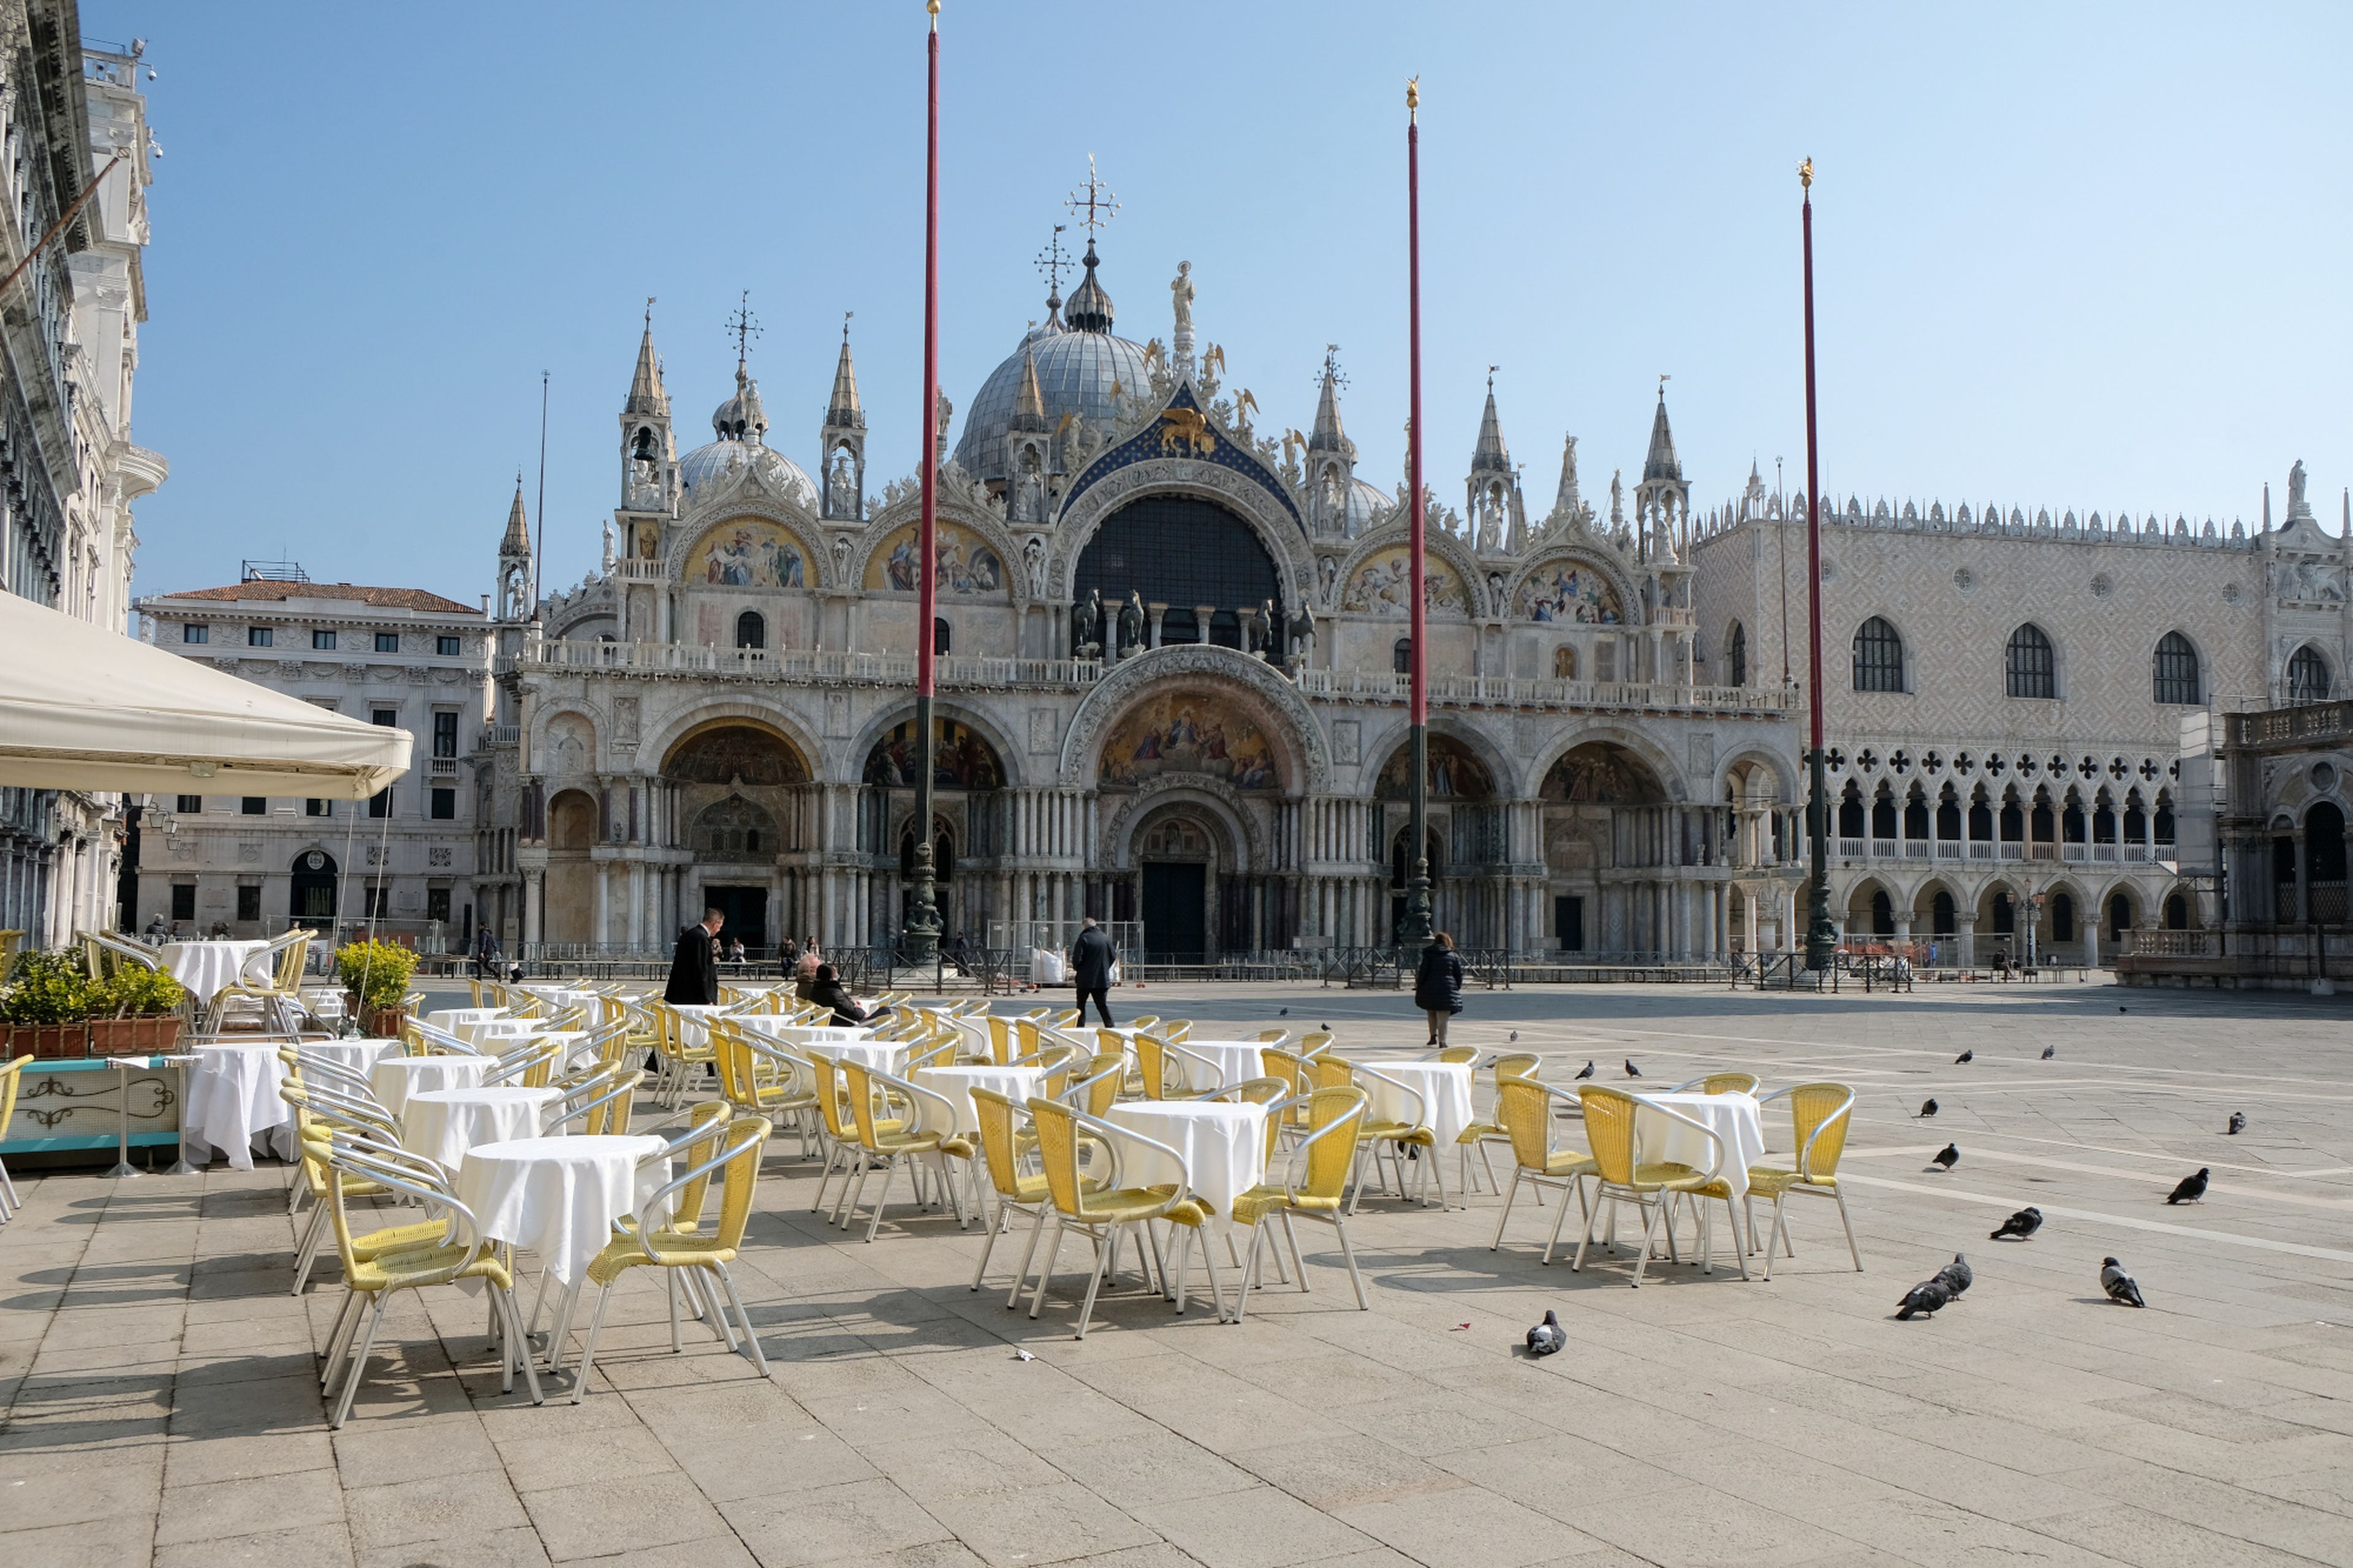 Un restaurante vacío en la Plaza de San Marcos en Venecia tras el segundo día de un bloqueo sin precedentes en toda Italia impuesto para frenar el brote de coronavirus, en Venecia, Italia, el 11 de marzo de 2020.